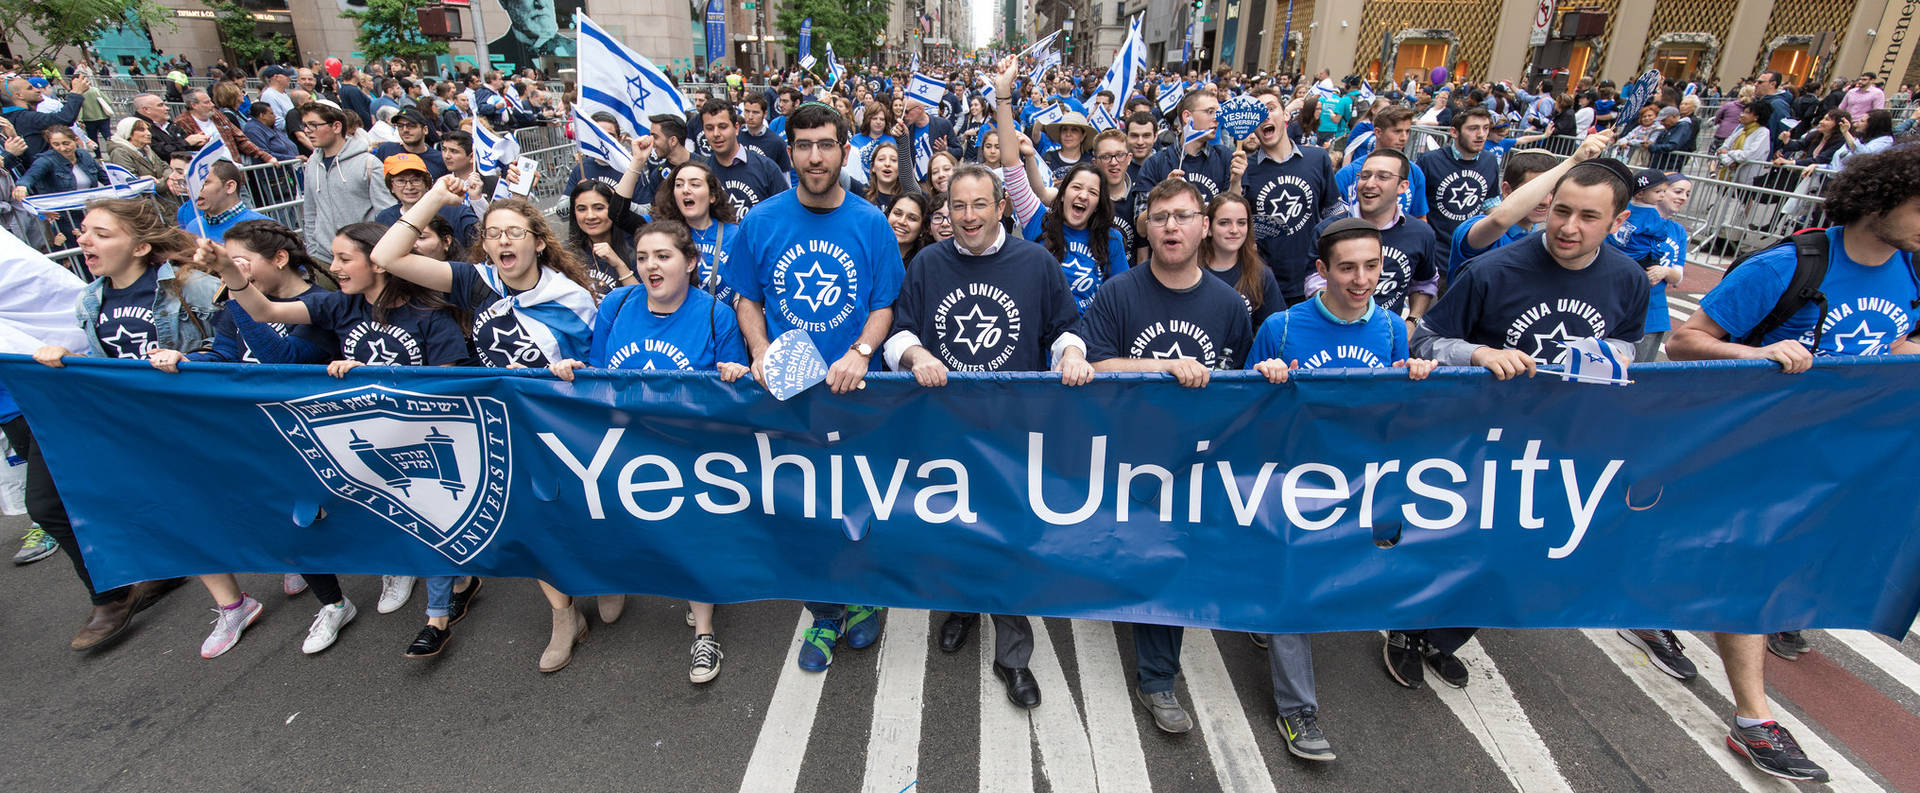 Yeshiva University Students During Rally Wallpaper